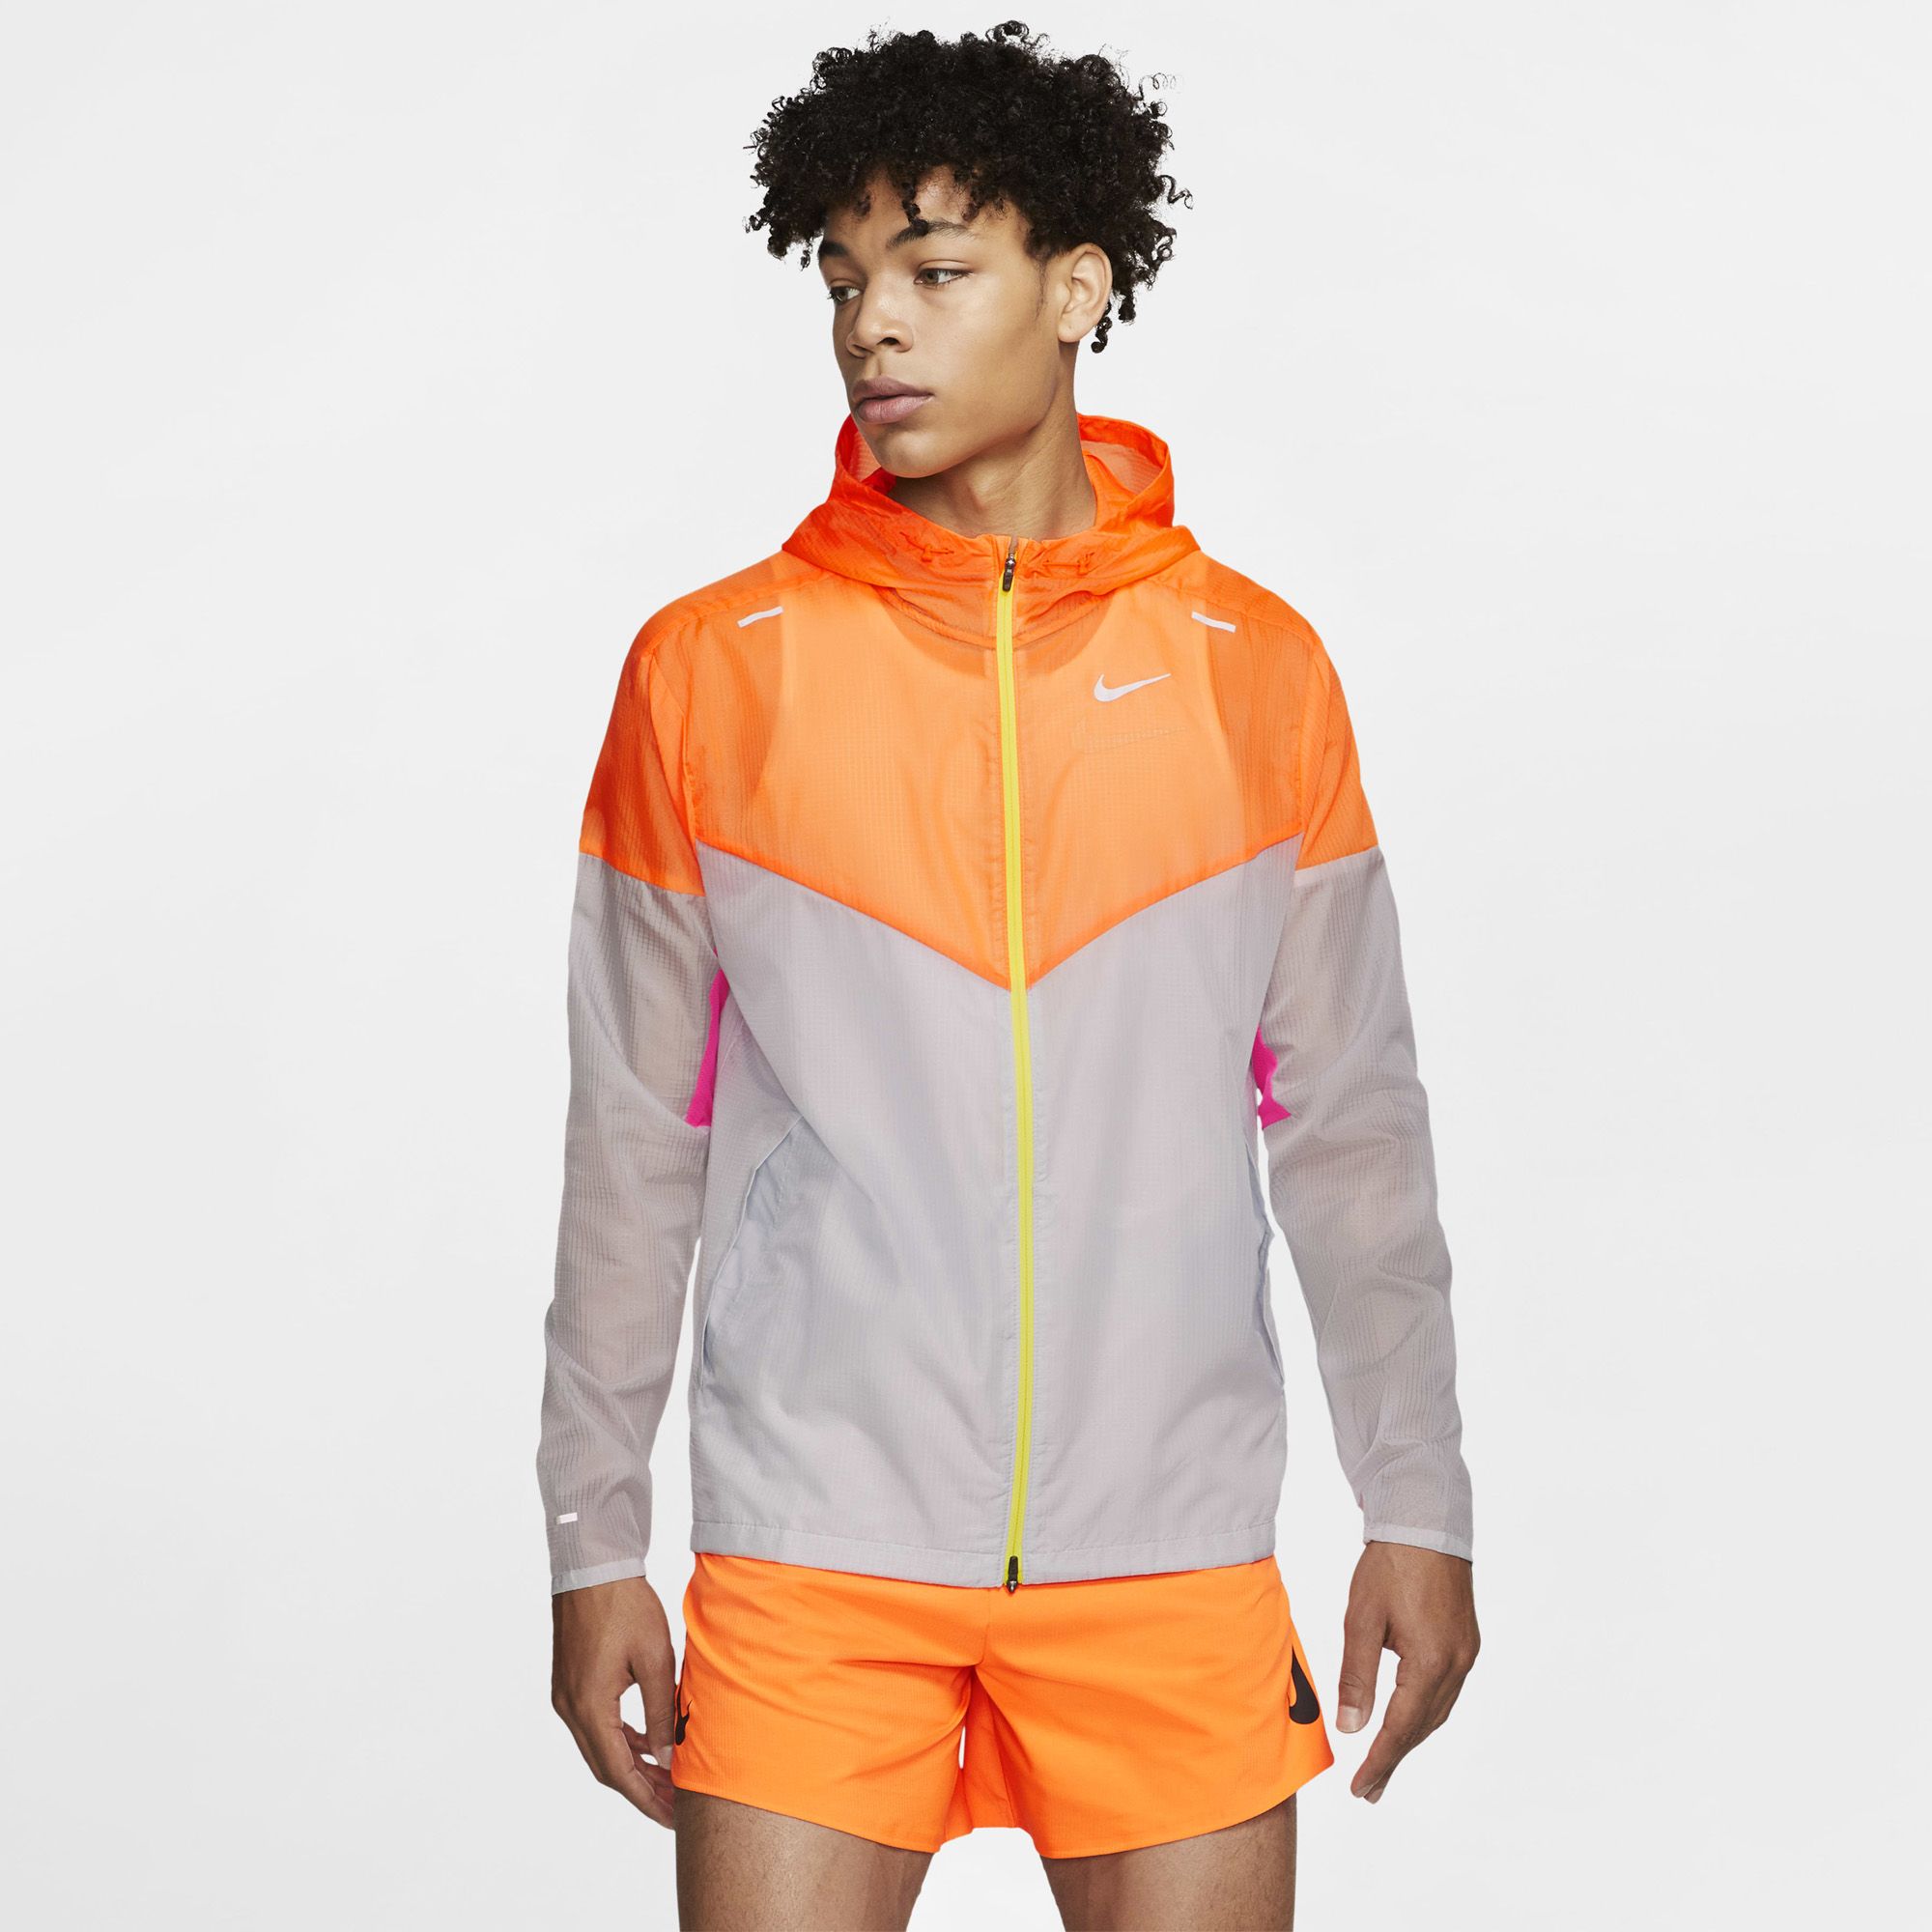 Nike Windrunner Running Jacket - Total Orange – Online Sneaker Store